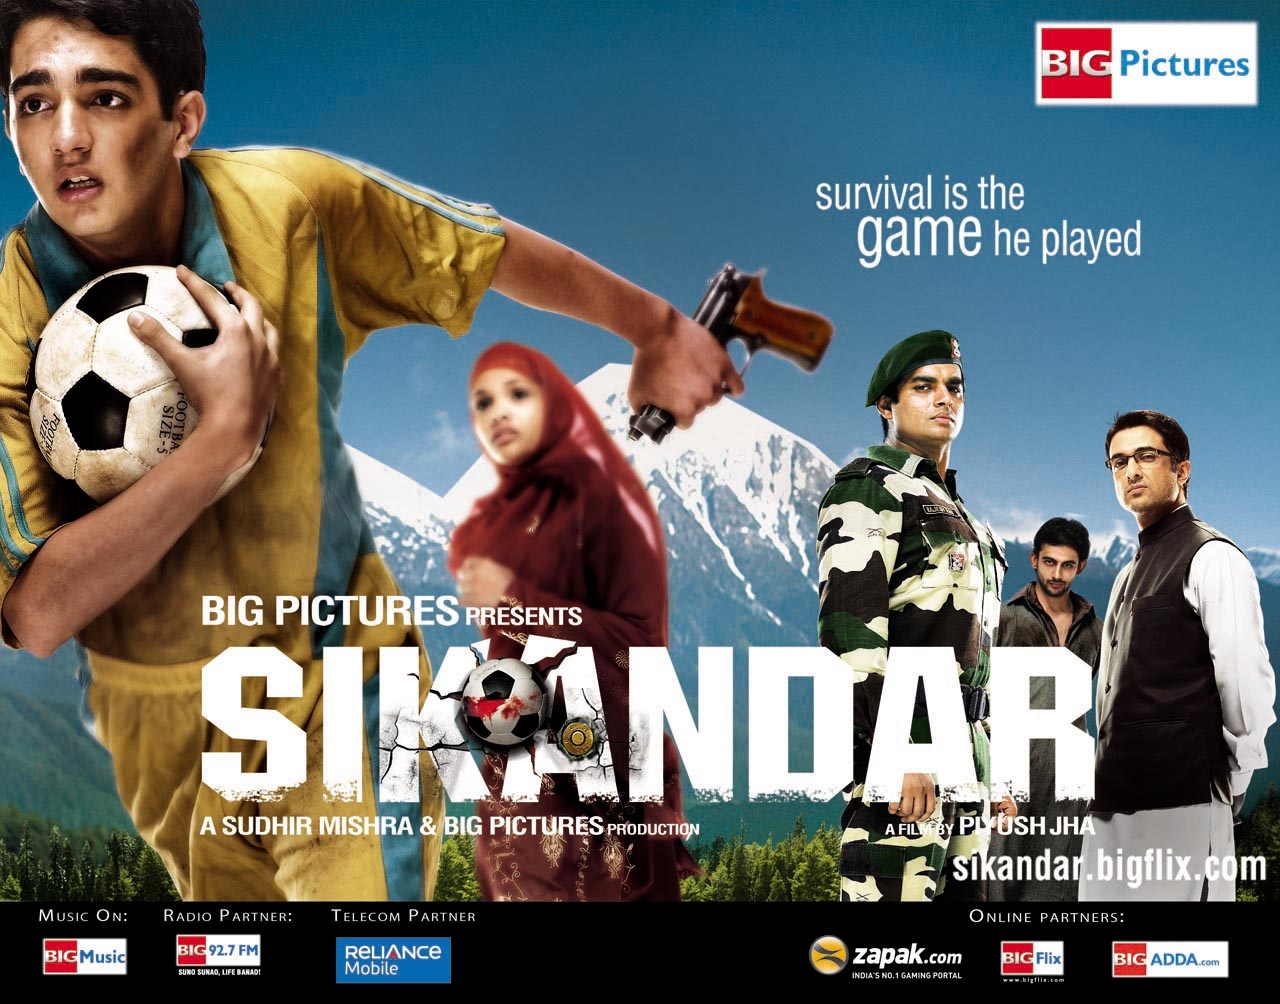 Bollywood film Sikandar